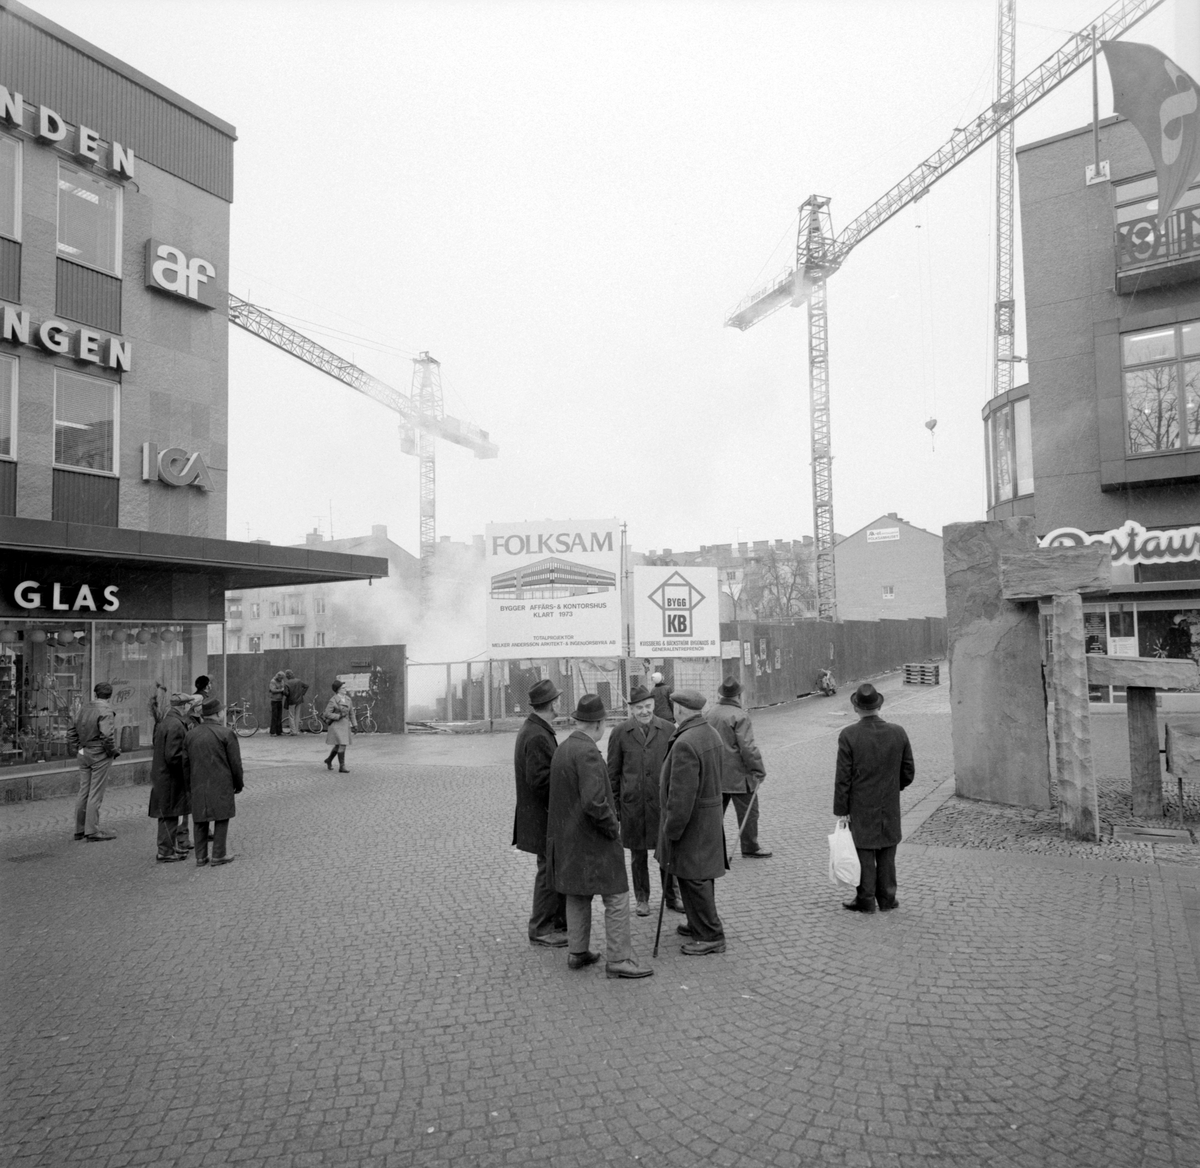 Det så kallade Folksamhuset under uppförande våren 1972. Beställare var som epitetet anger Folksam och för bygget stod Kvissberg & Bäckström. Med byggnationen sanerades den sista resten av sammanhållen träkåkbebyggelse i centrala Linköping.